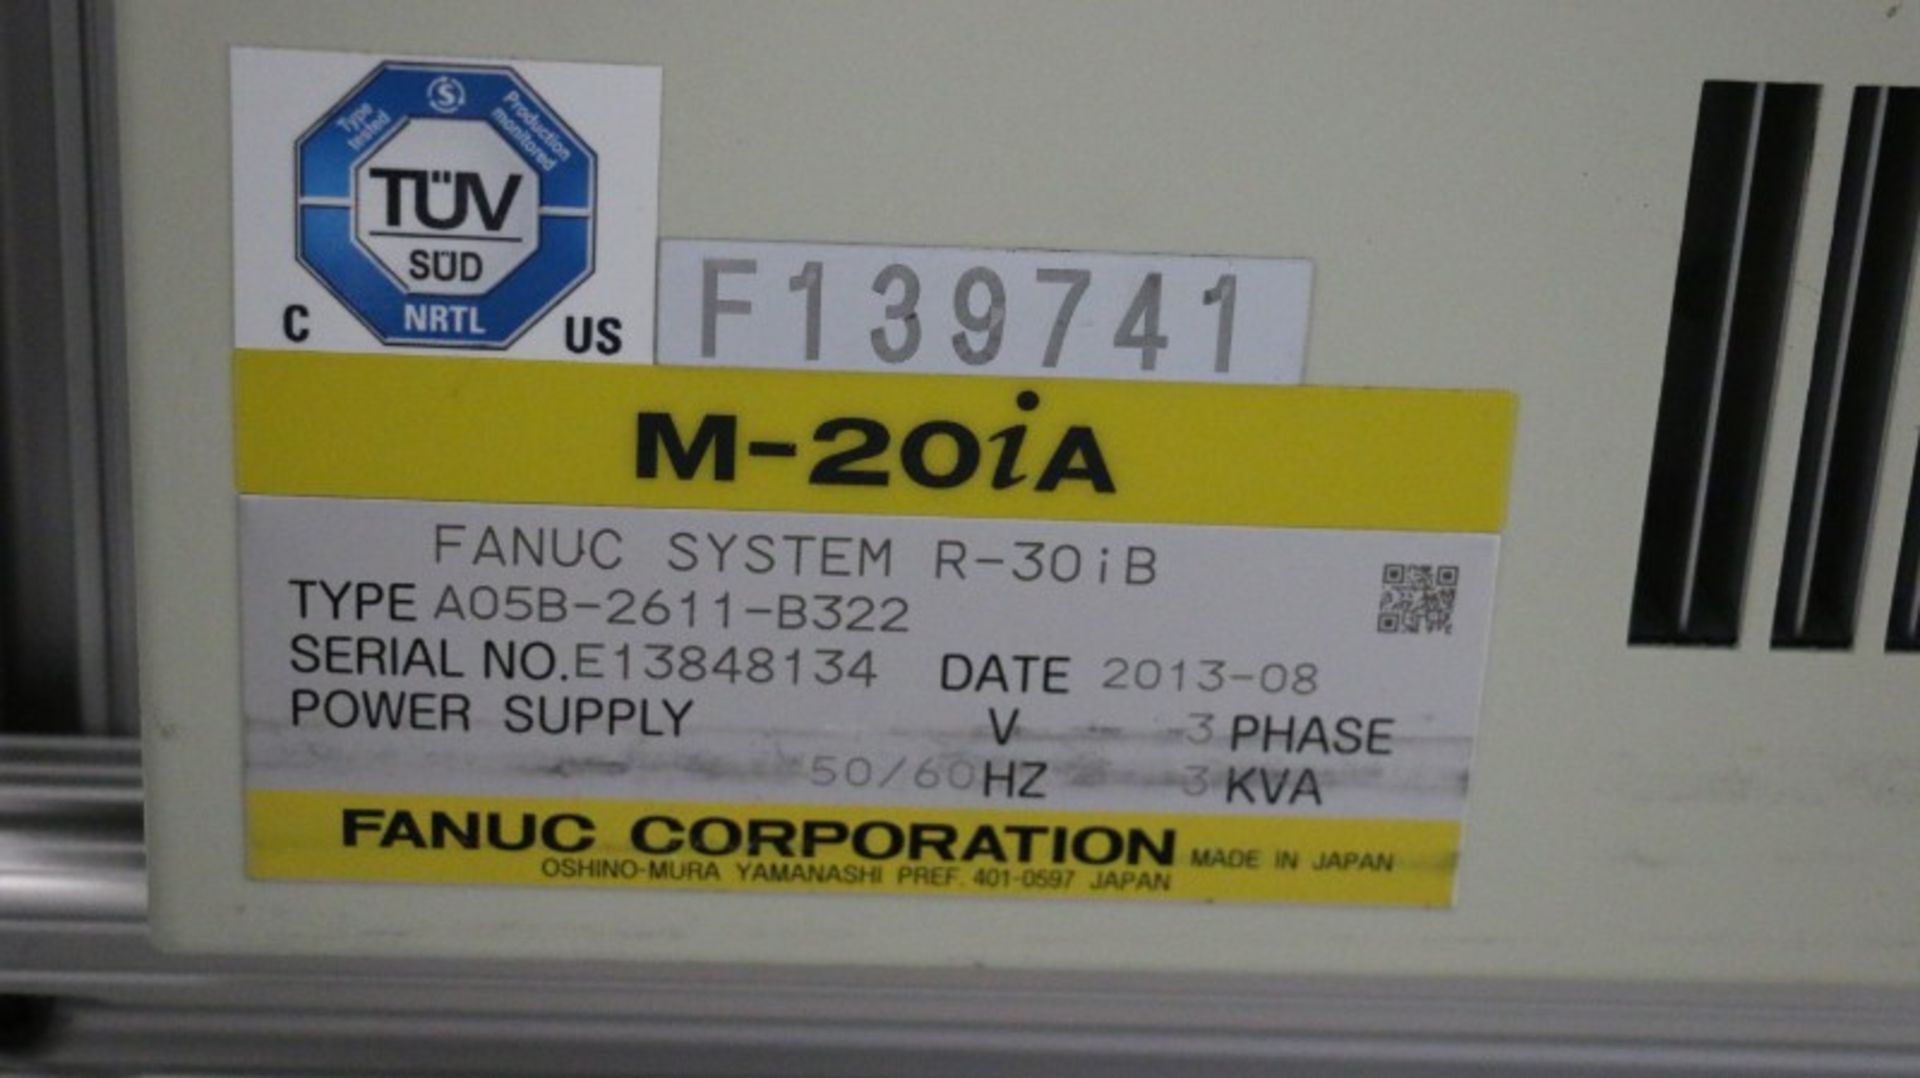 Fanuc Model M-20iA CNC Robot - Image 14 of 14